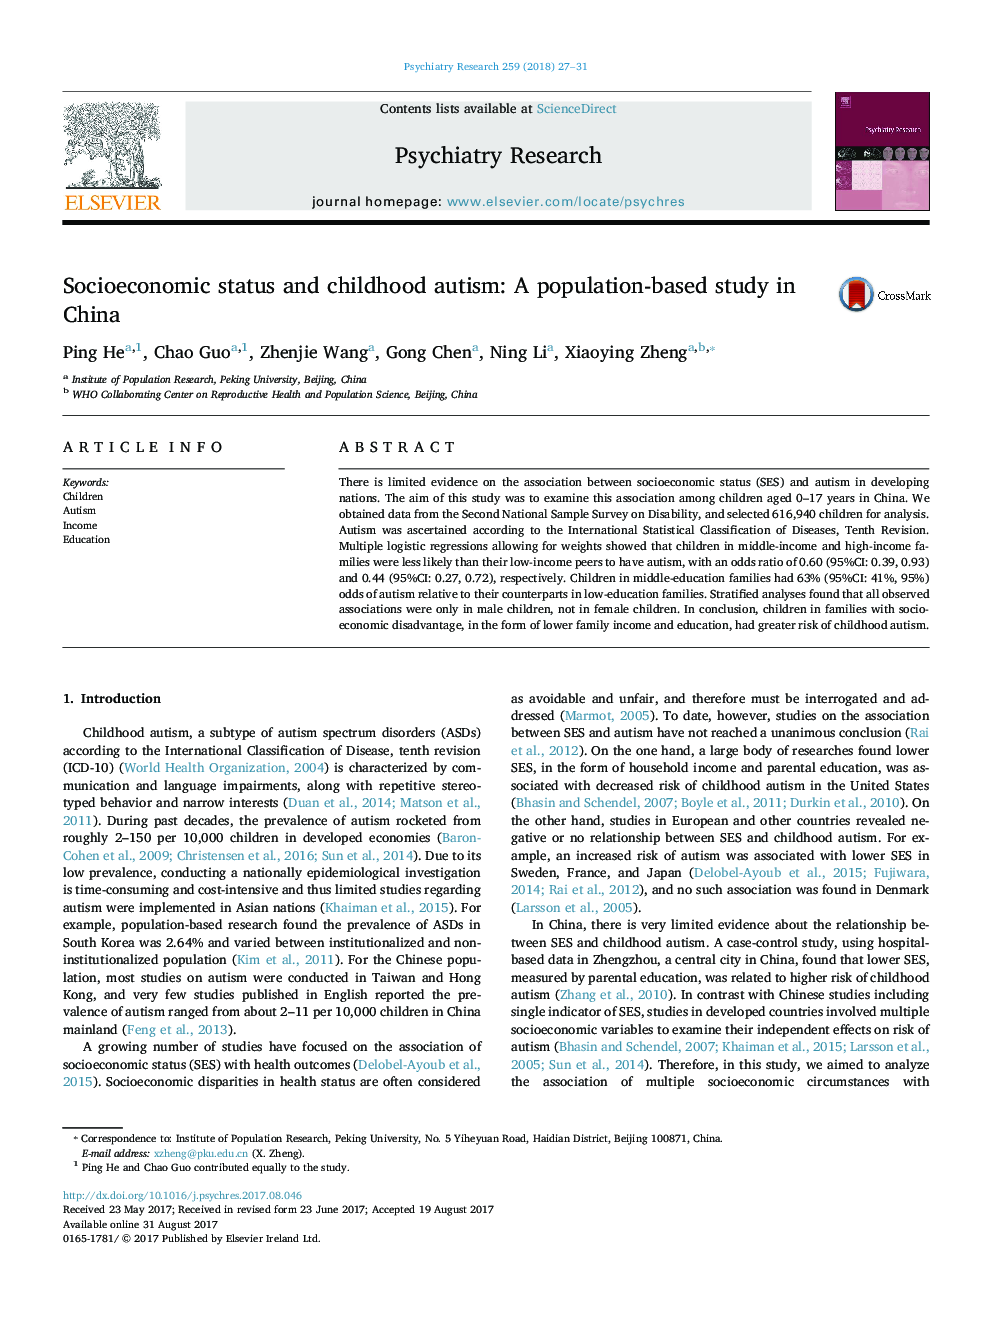 وضعیت اجتماعی-اقتصادی و اوتیسم دوران کودکی: مطالعه مبتنی بر جمعیت در چین است